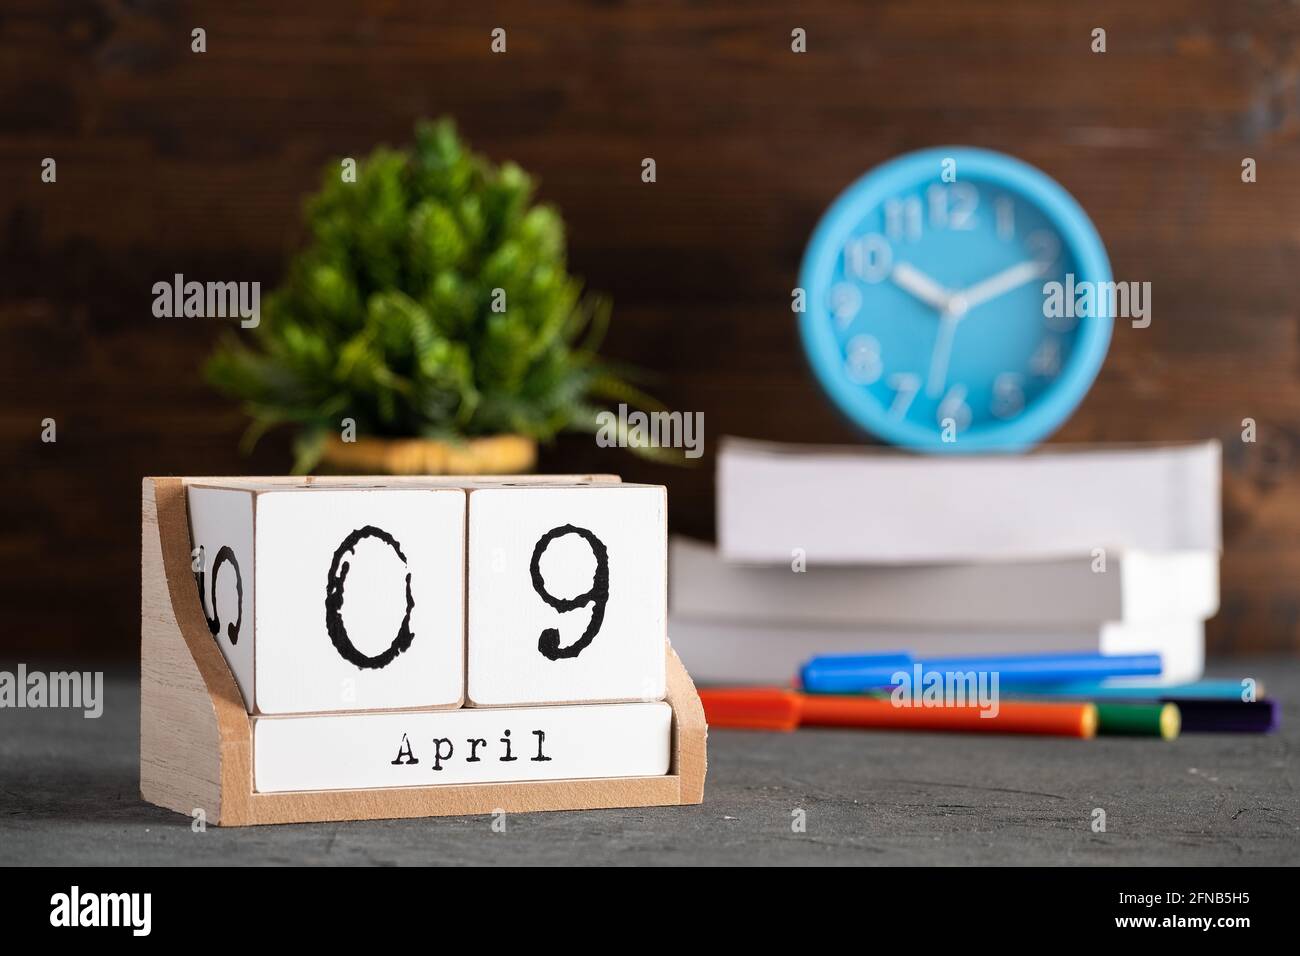 Le 09 avril. Avril 09 calendrier cube en bois avec objets flous sur fond. Banque D'Images